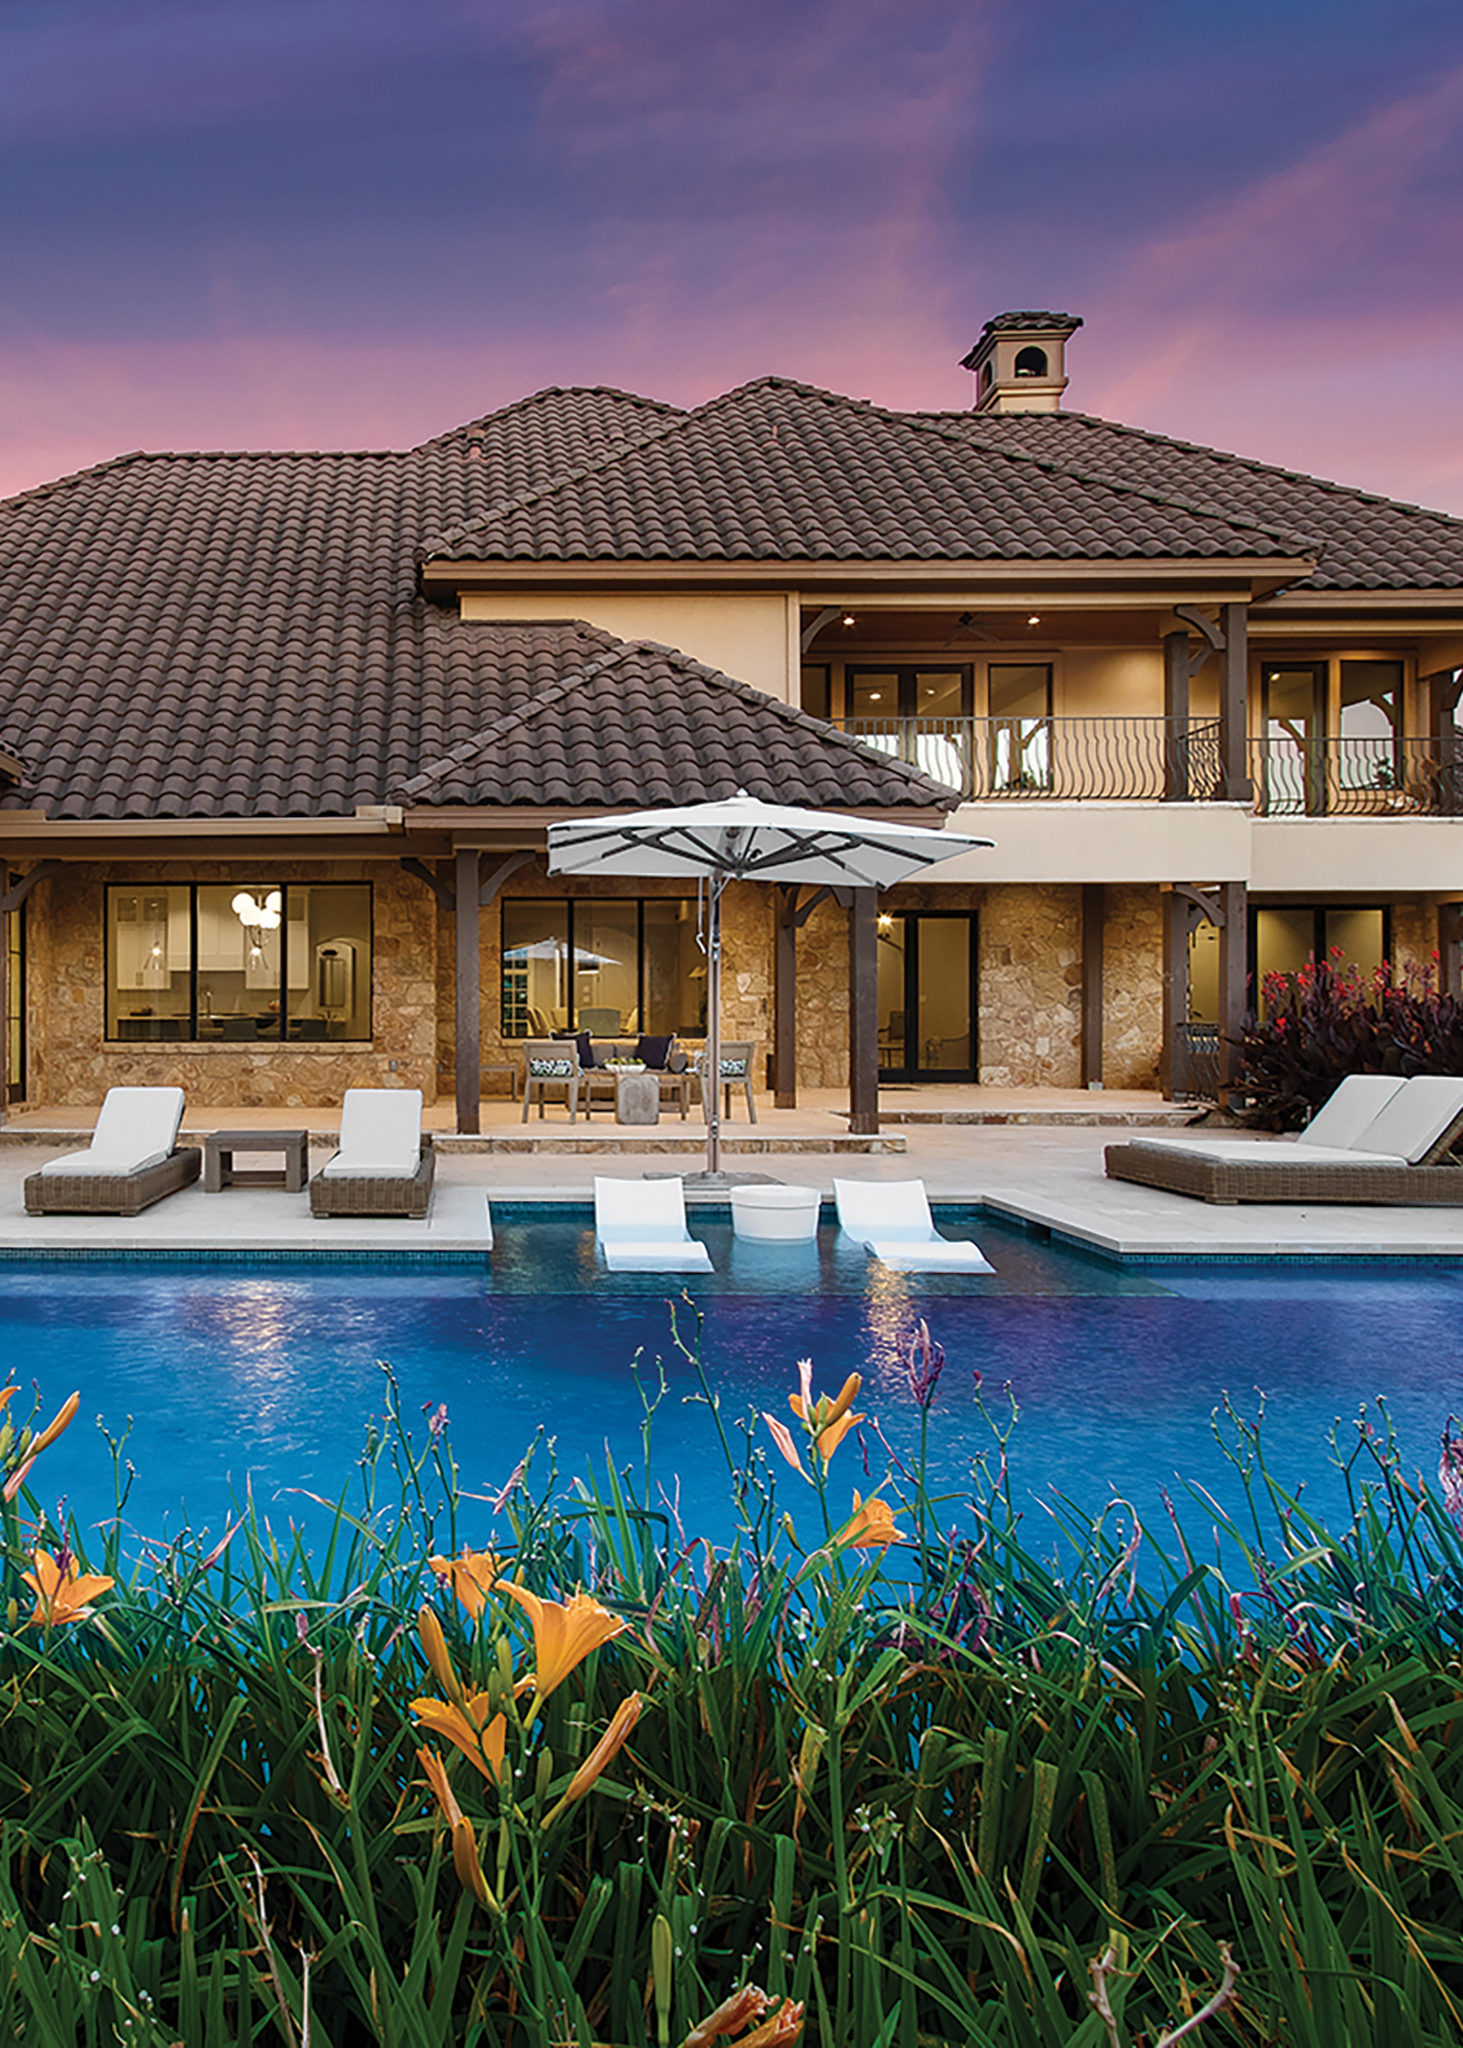 House and backyard pool